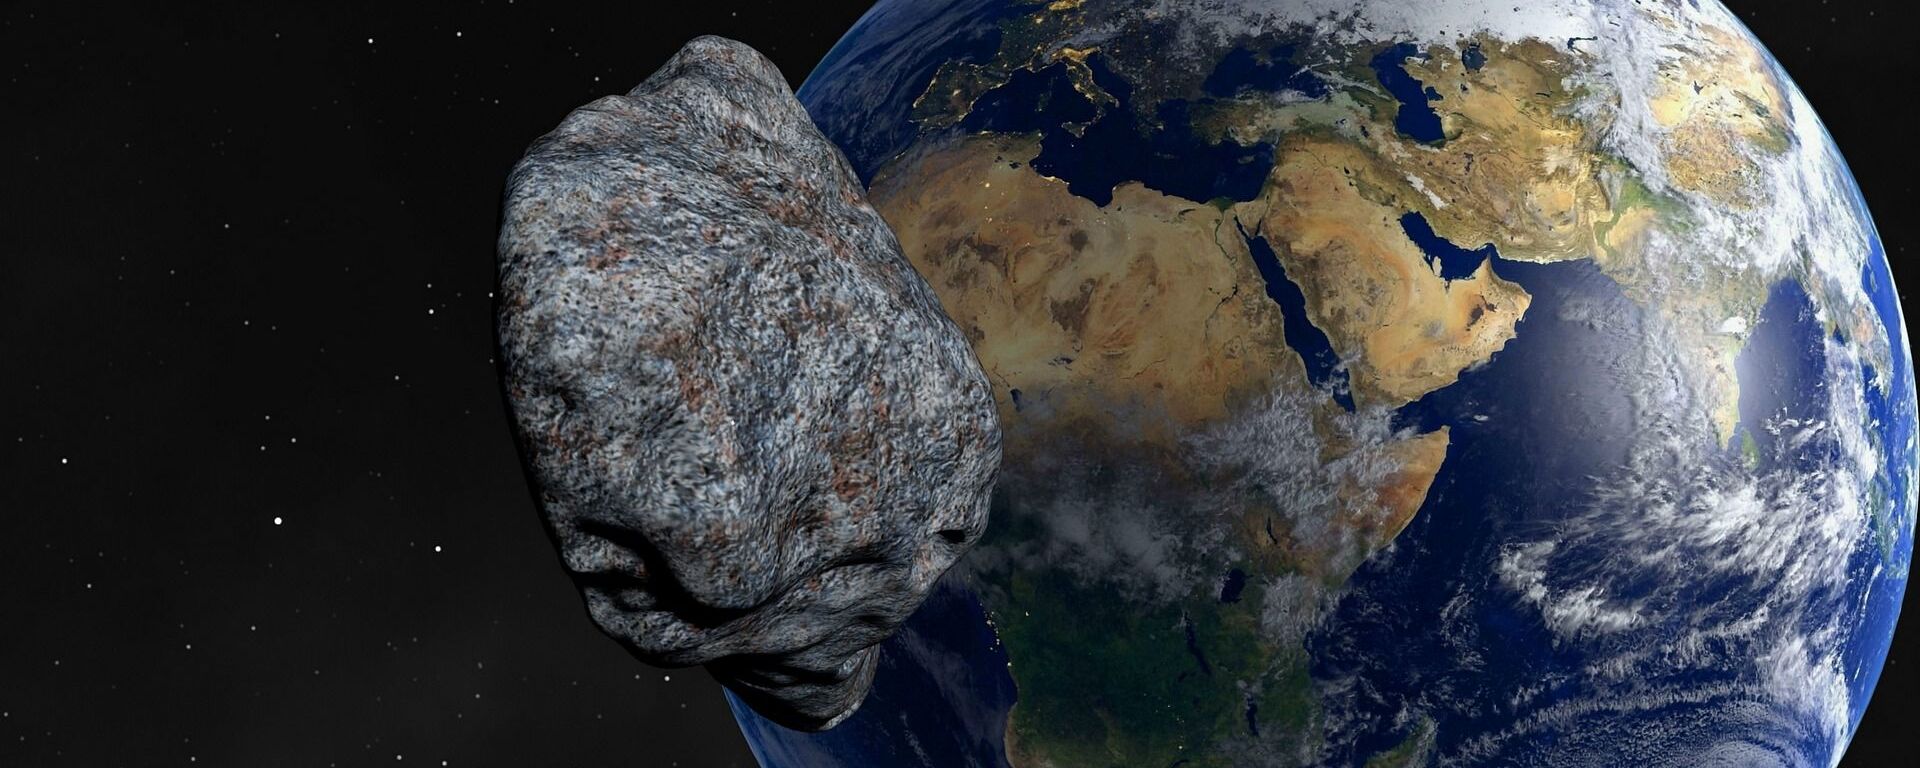 Asteroid - Sputnik International, 1920, 25.04.2022